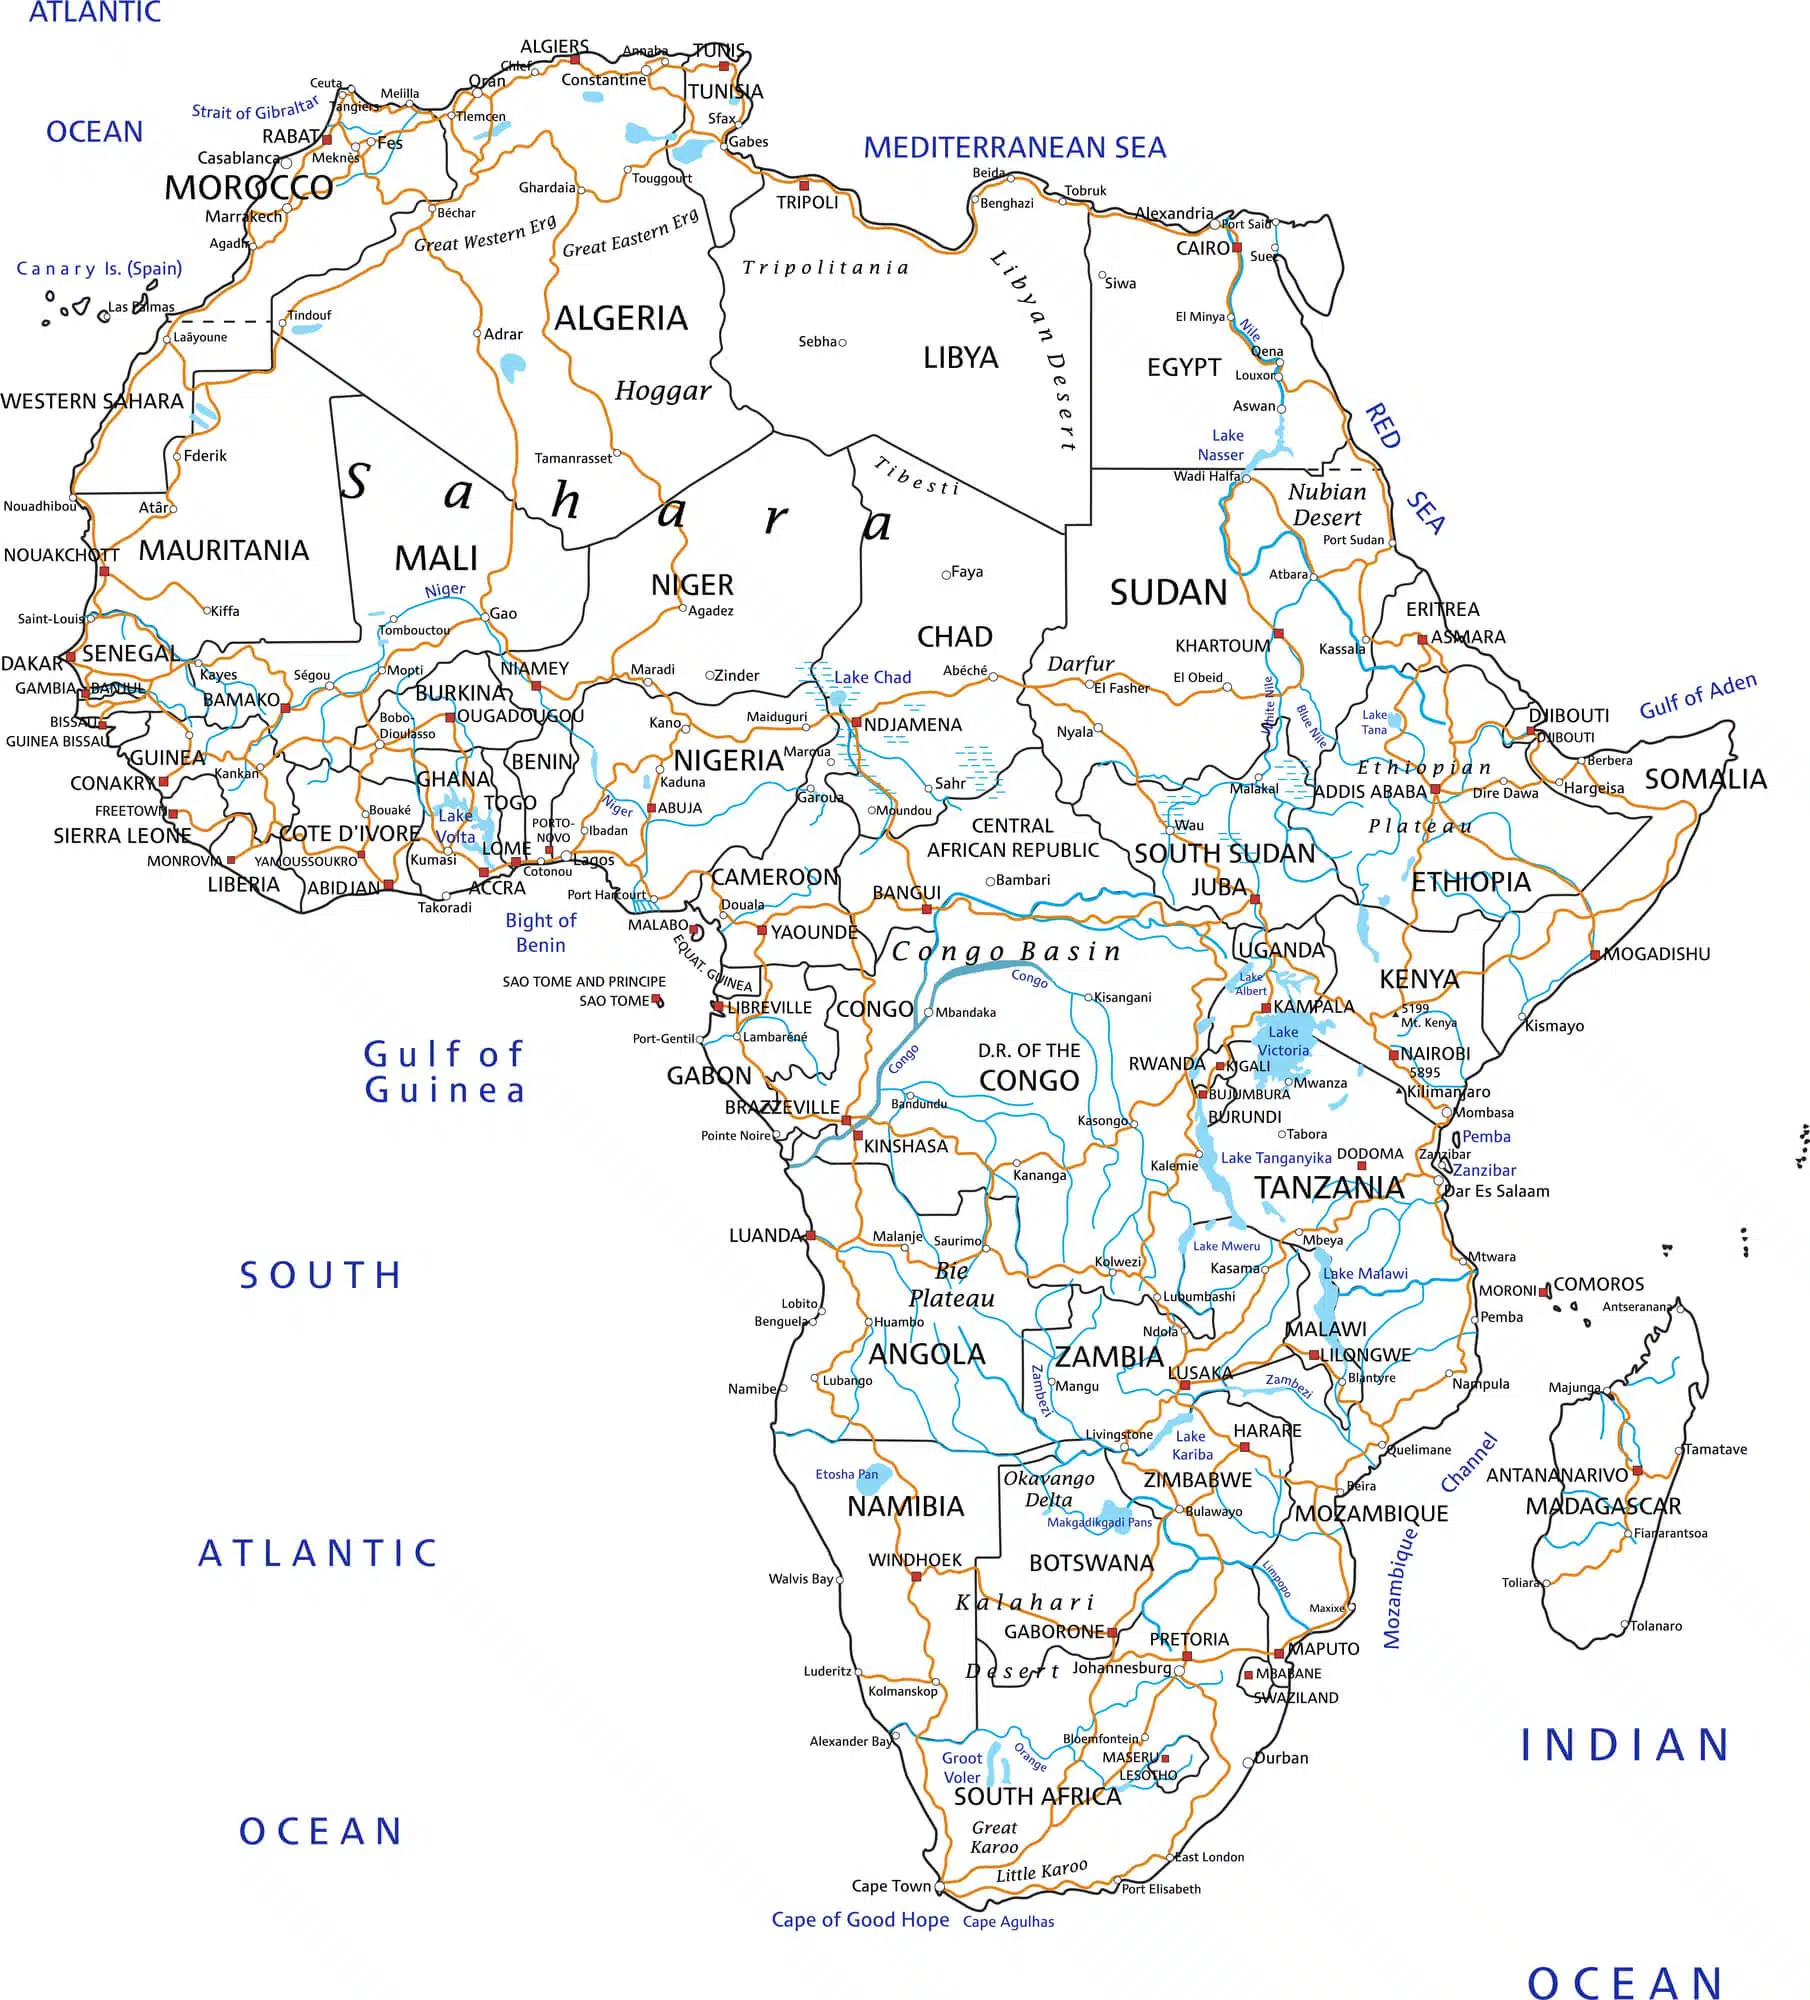 מפת האגמים והנהרות באפריקה. <a href="https://depositphotos.com. ">המחשה: depositphotos.com</a>